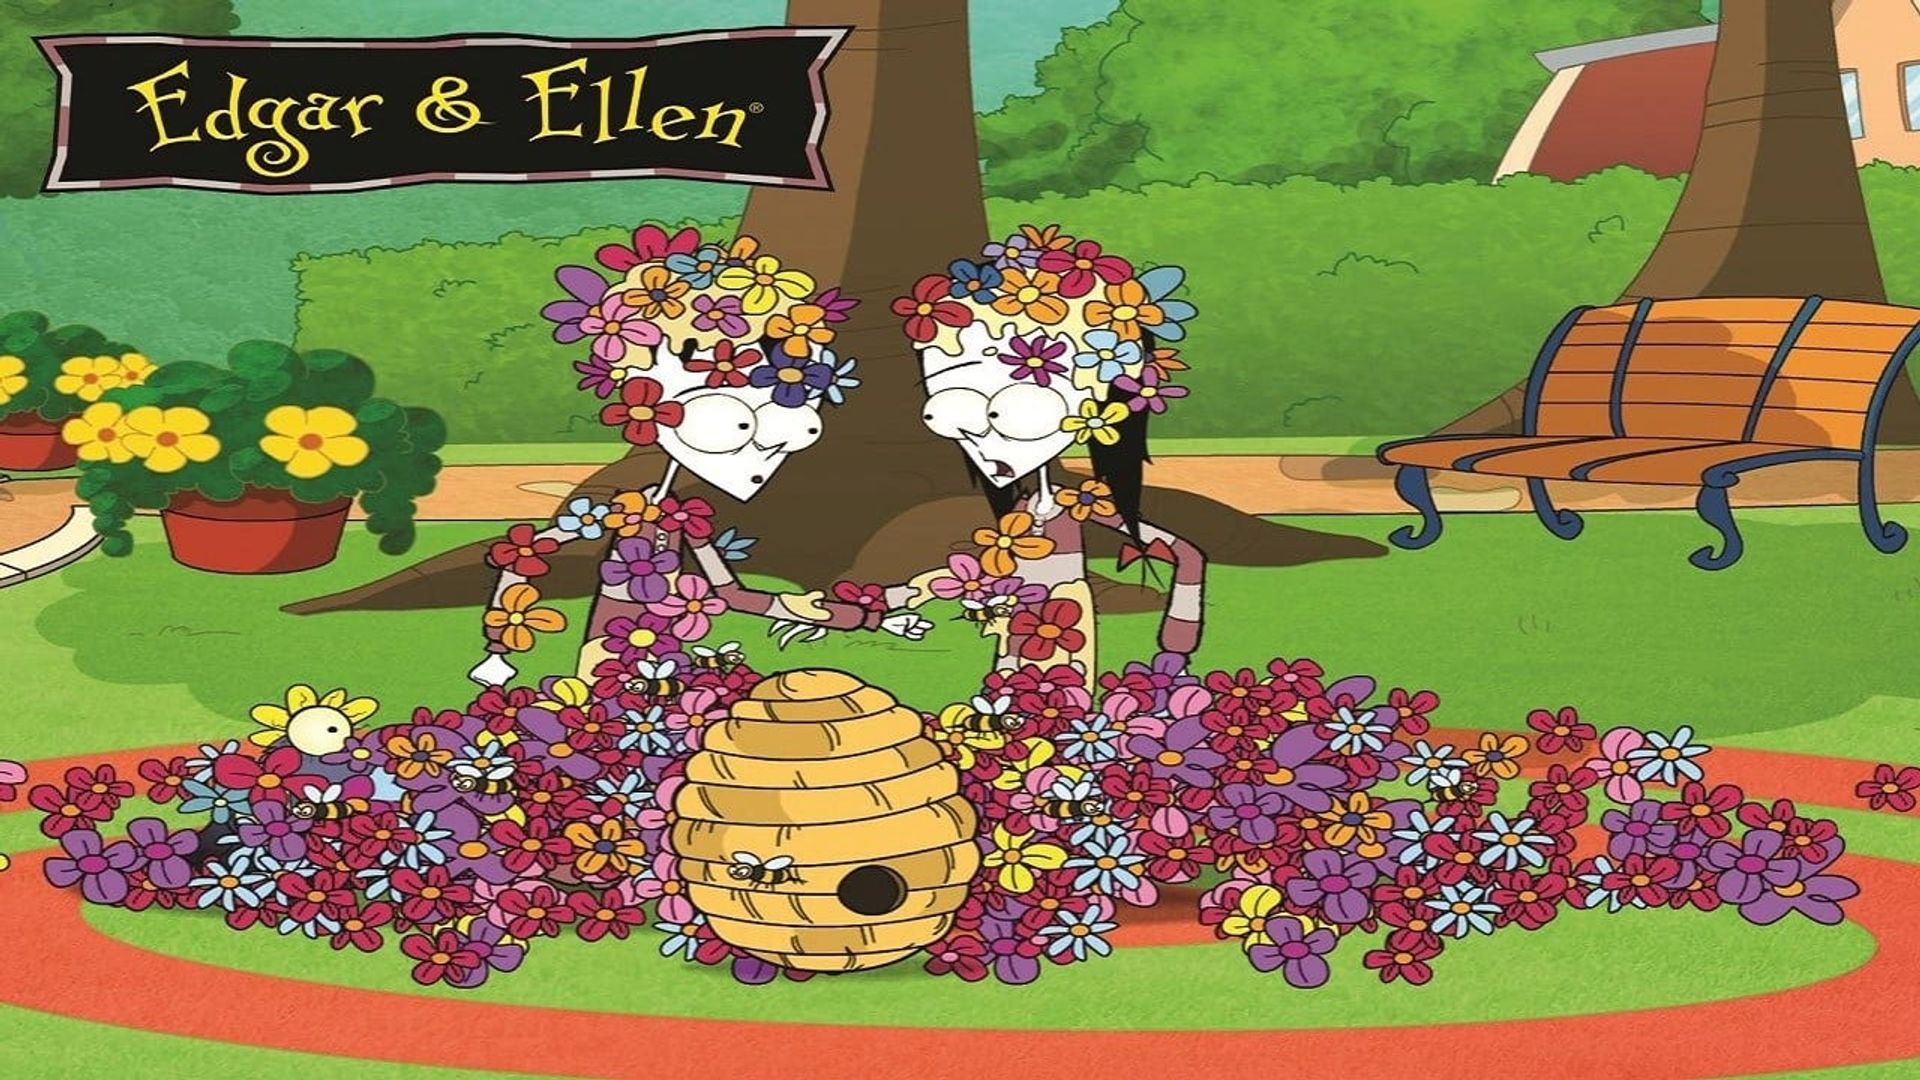 Edgar & Ellen background